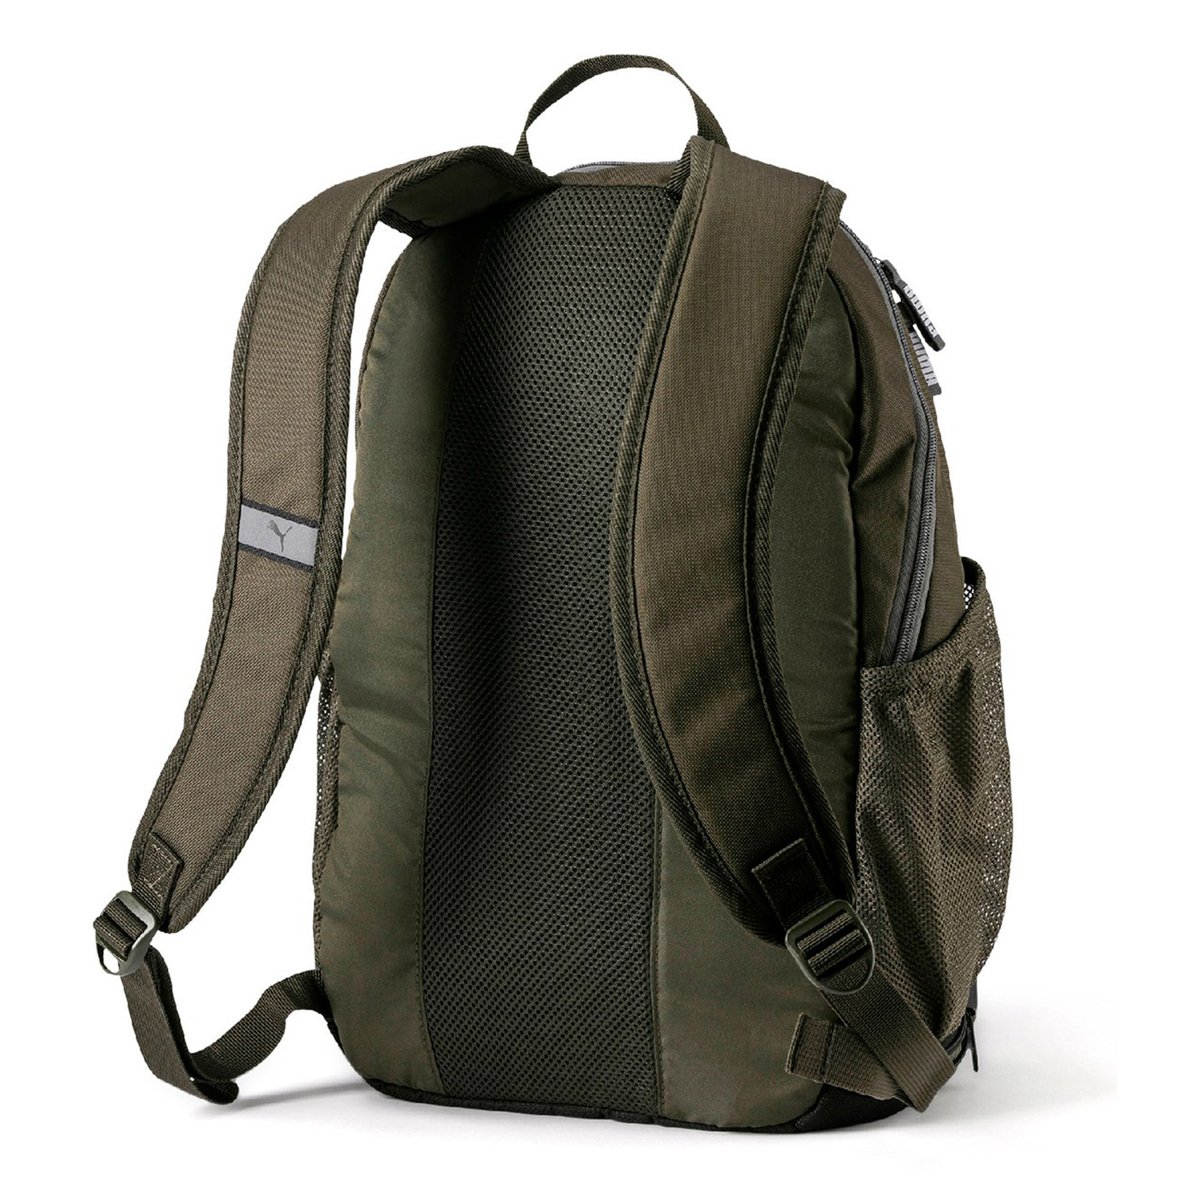 Puma Backpack 07549111